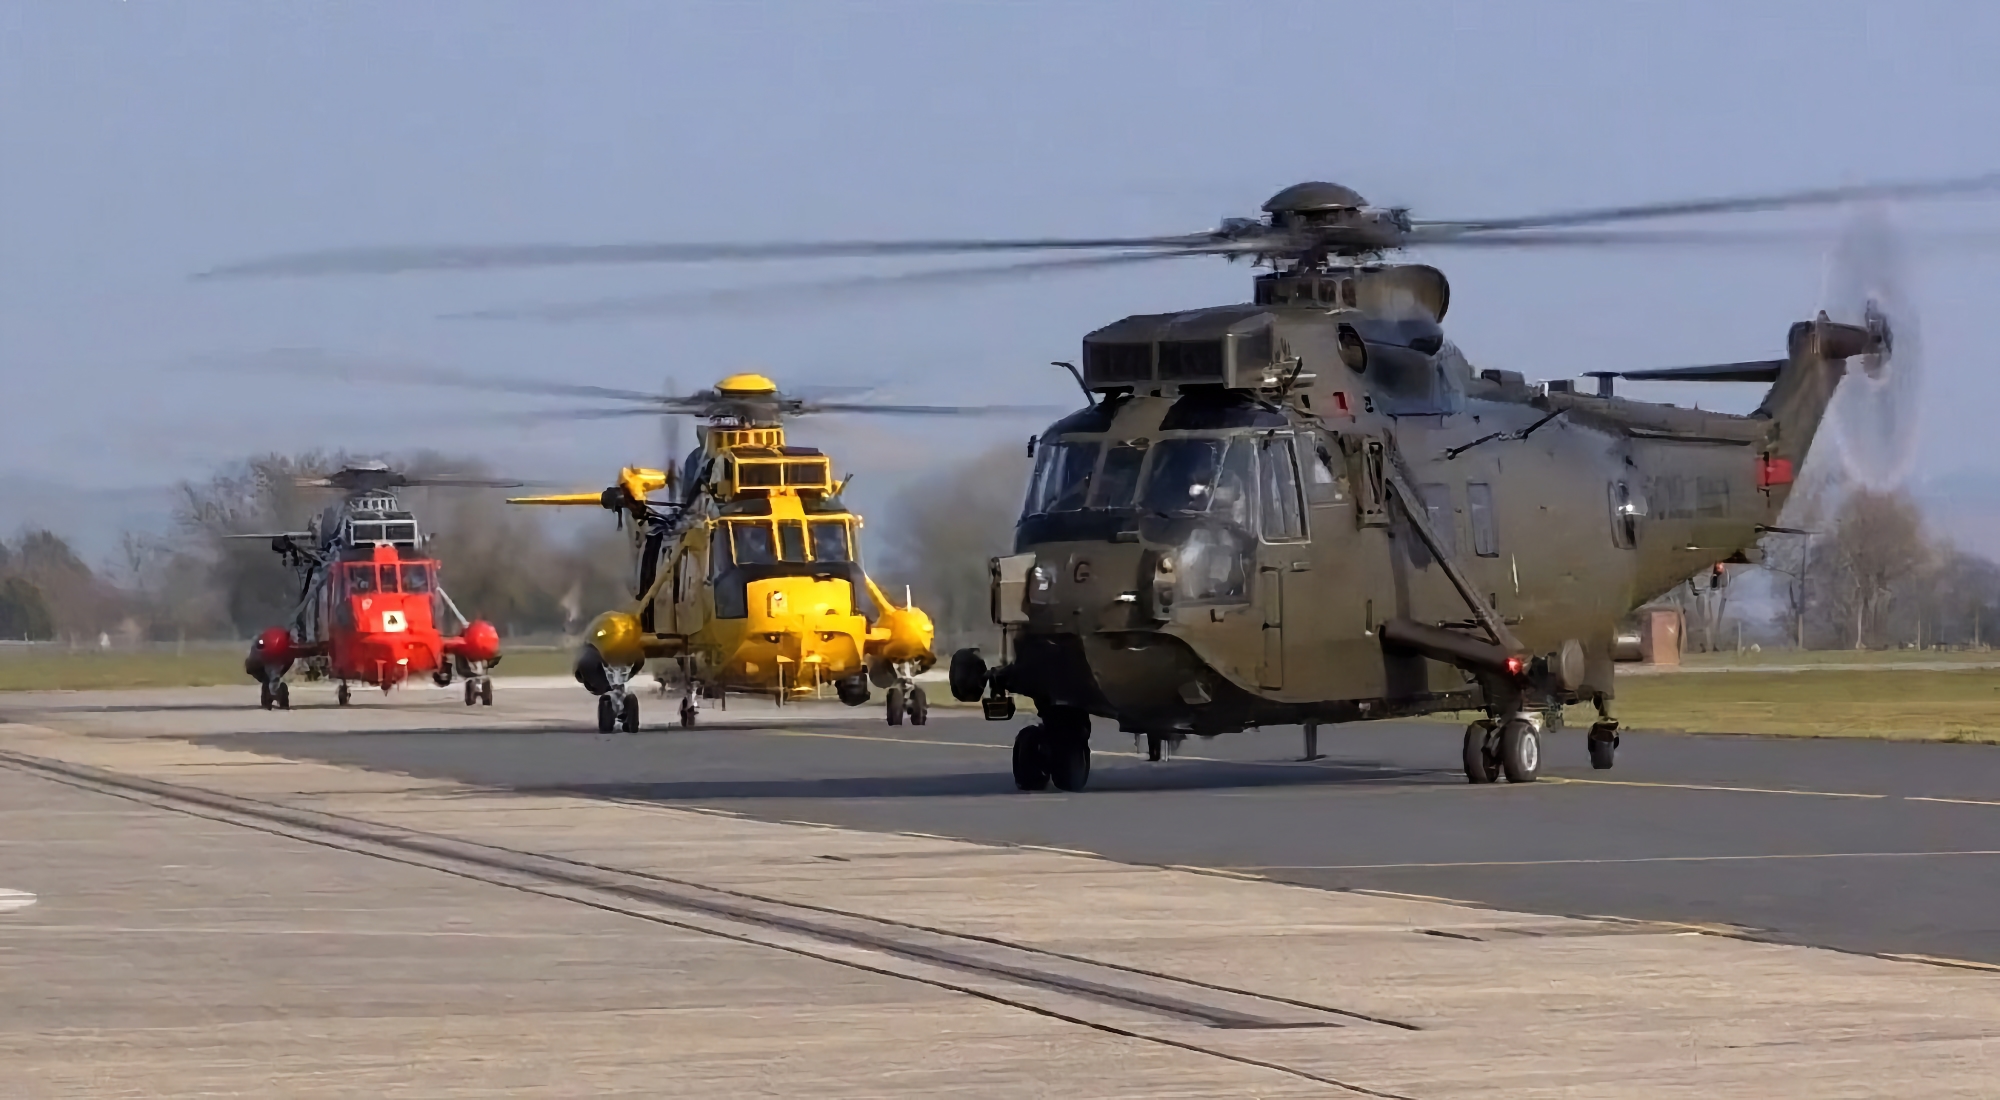 L'Ukraine a reçu l'hélicoptère britannique Sikorsky S-61 Sea King pour les opérations de recherche et de sauvetage